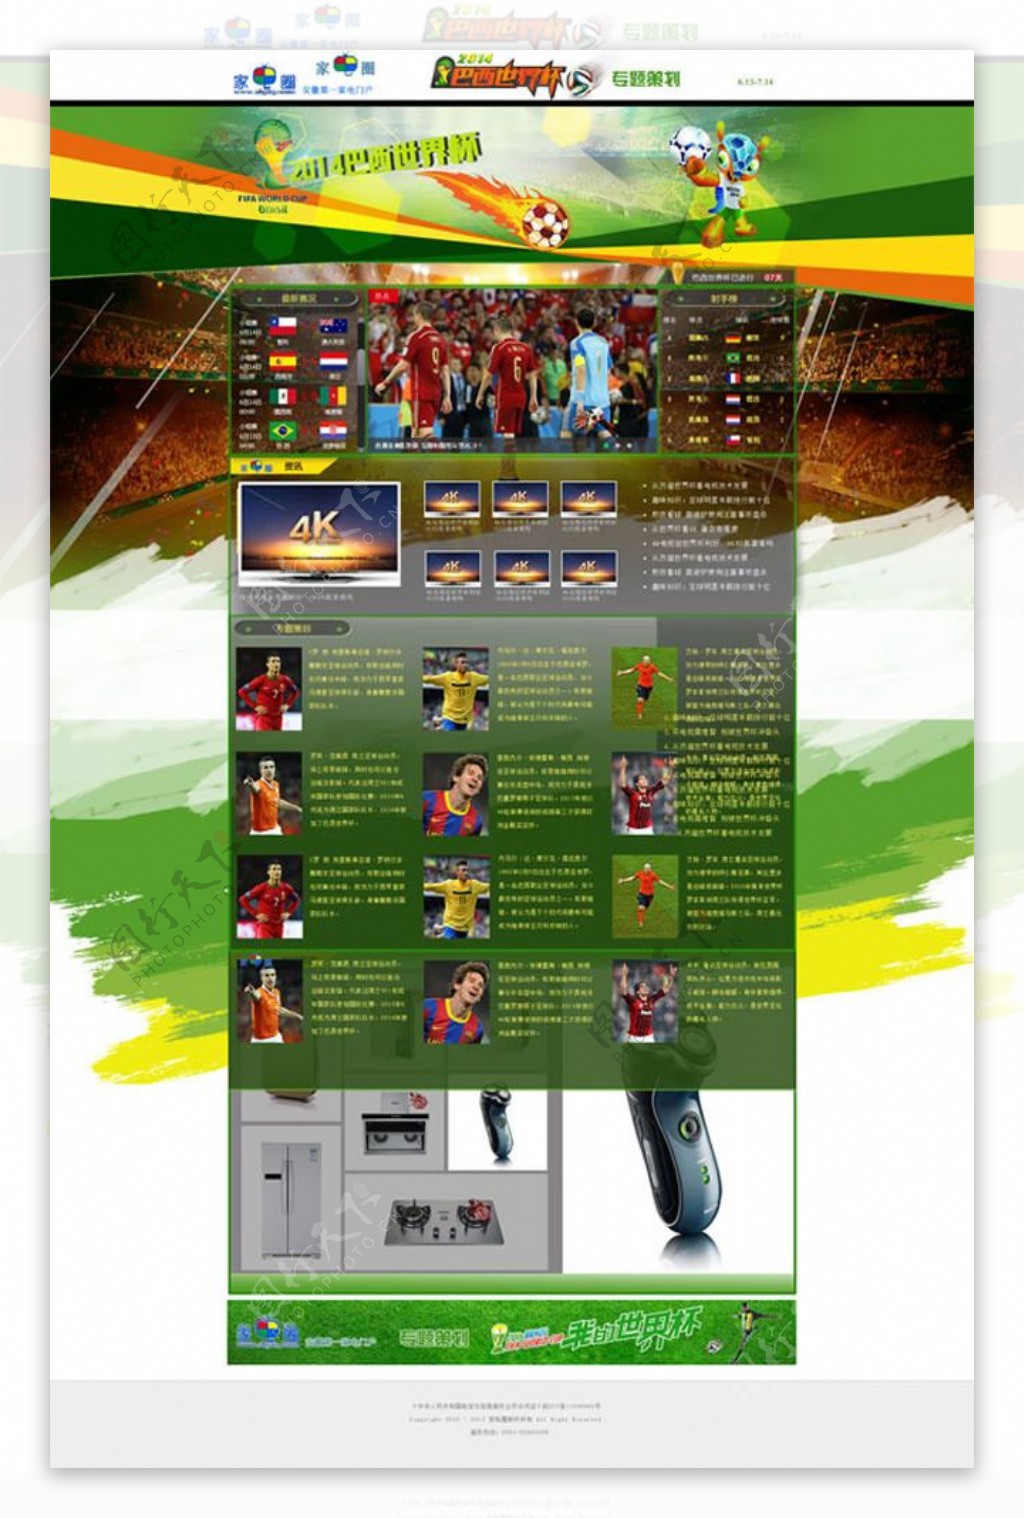 世界杯专题网页模板psd素材